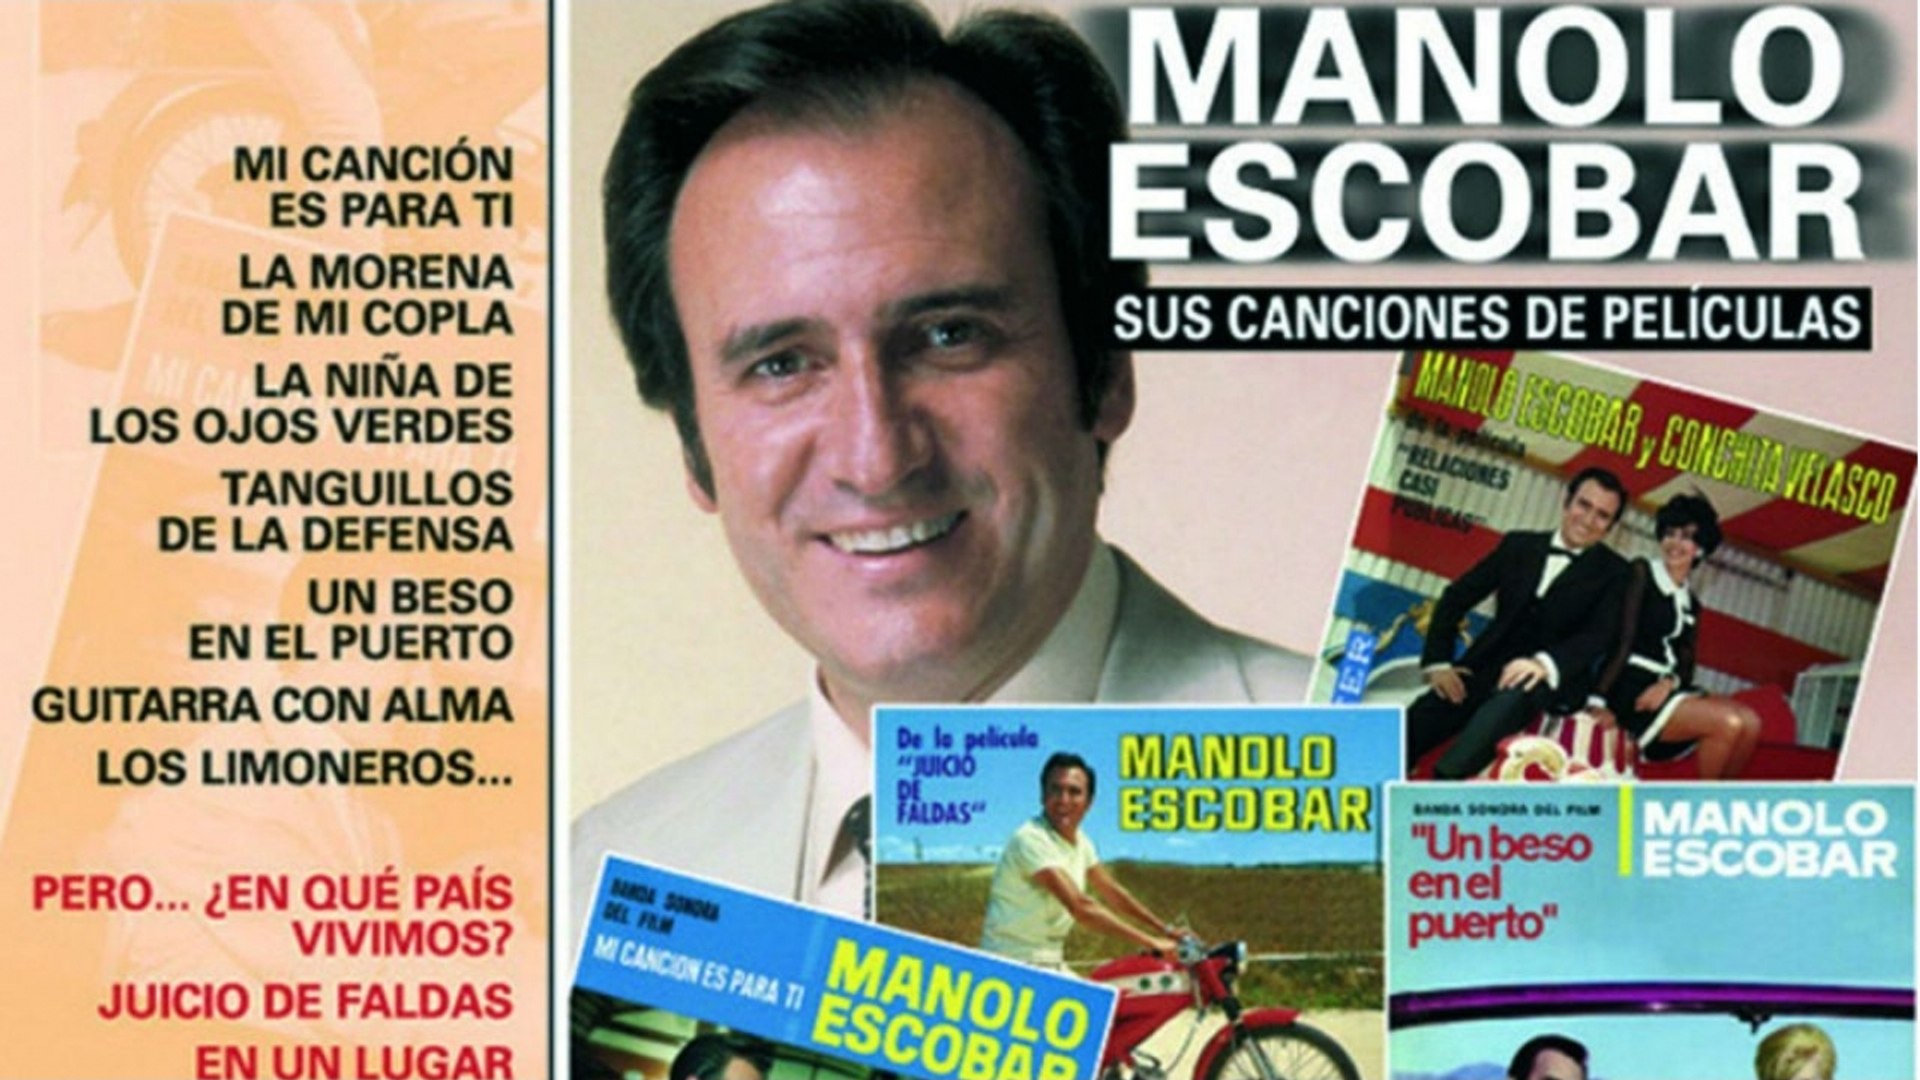 Manolo Escobar - Sus Canciones de Peliculas - Vídeo Dailymotion